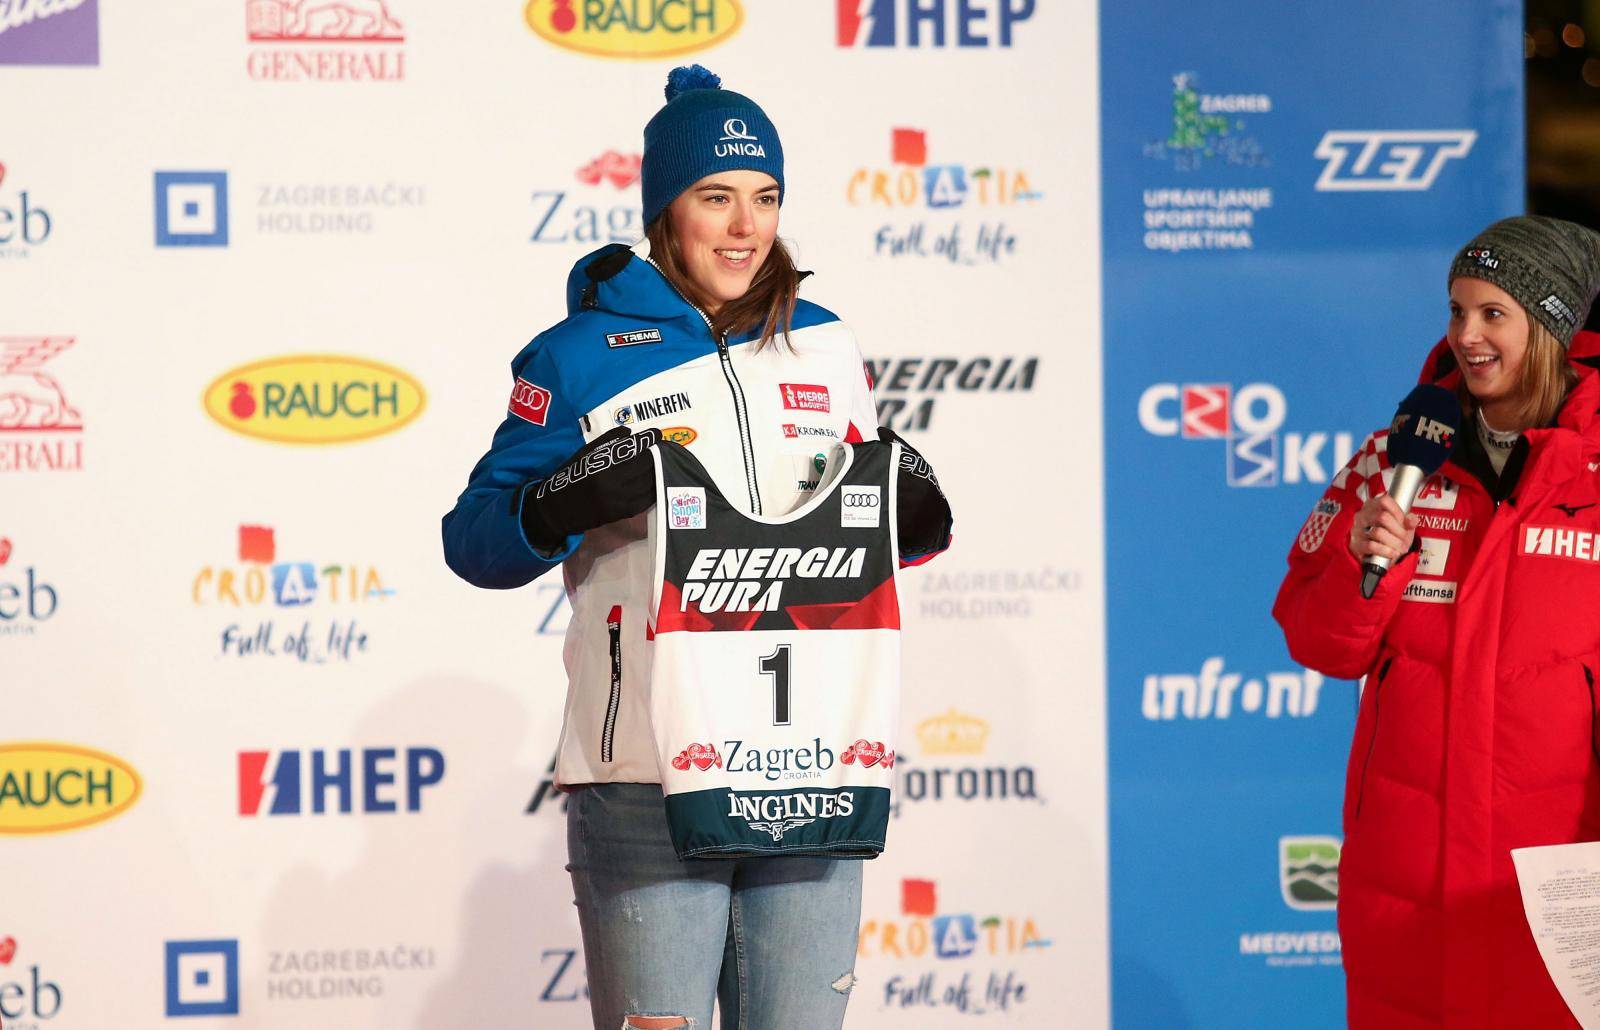 Zagreb: Na Tomislavcu održano izvlačenje startnih brojeva ženske utrke